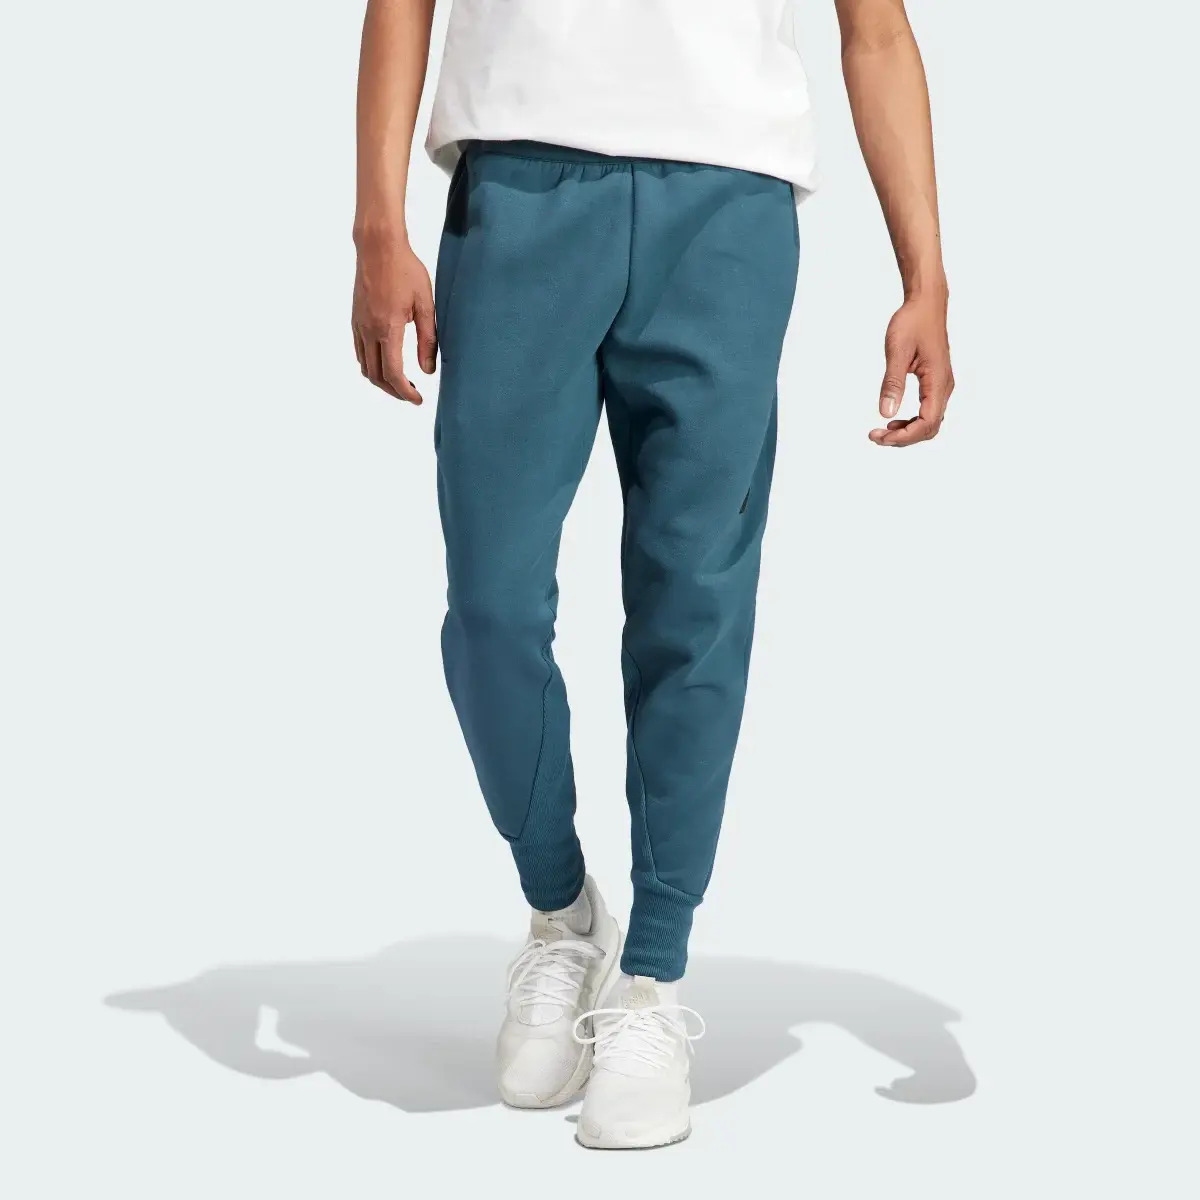 Adidas Z.N.E. Premium Pants. 1